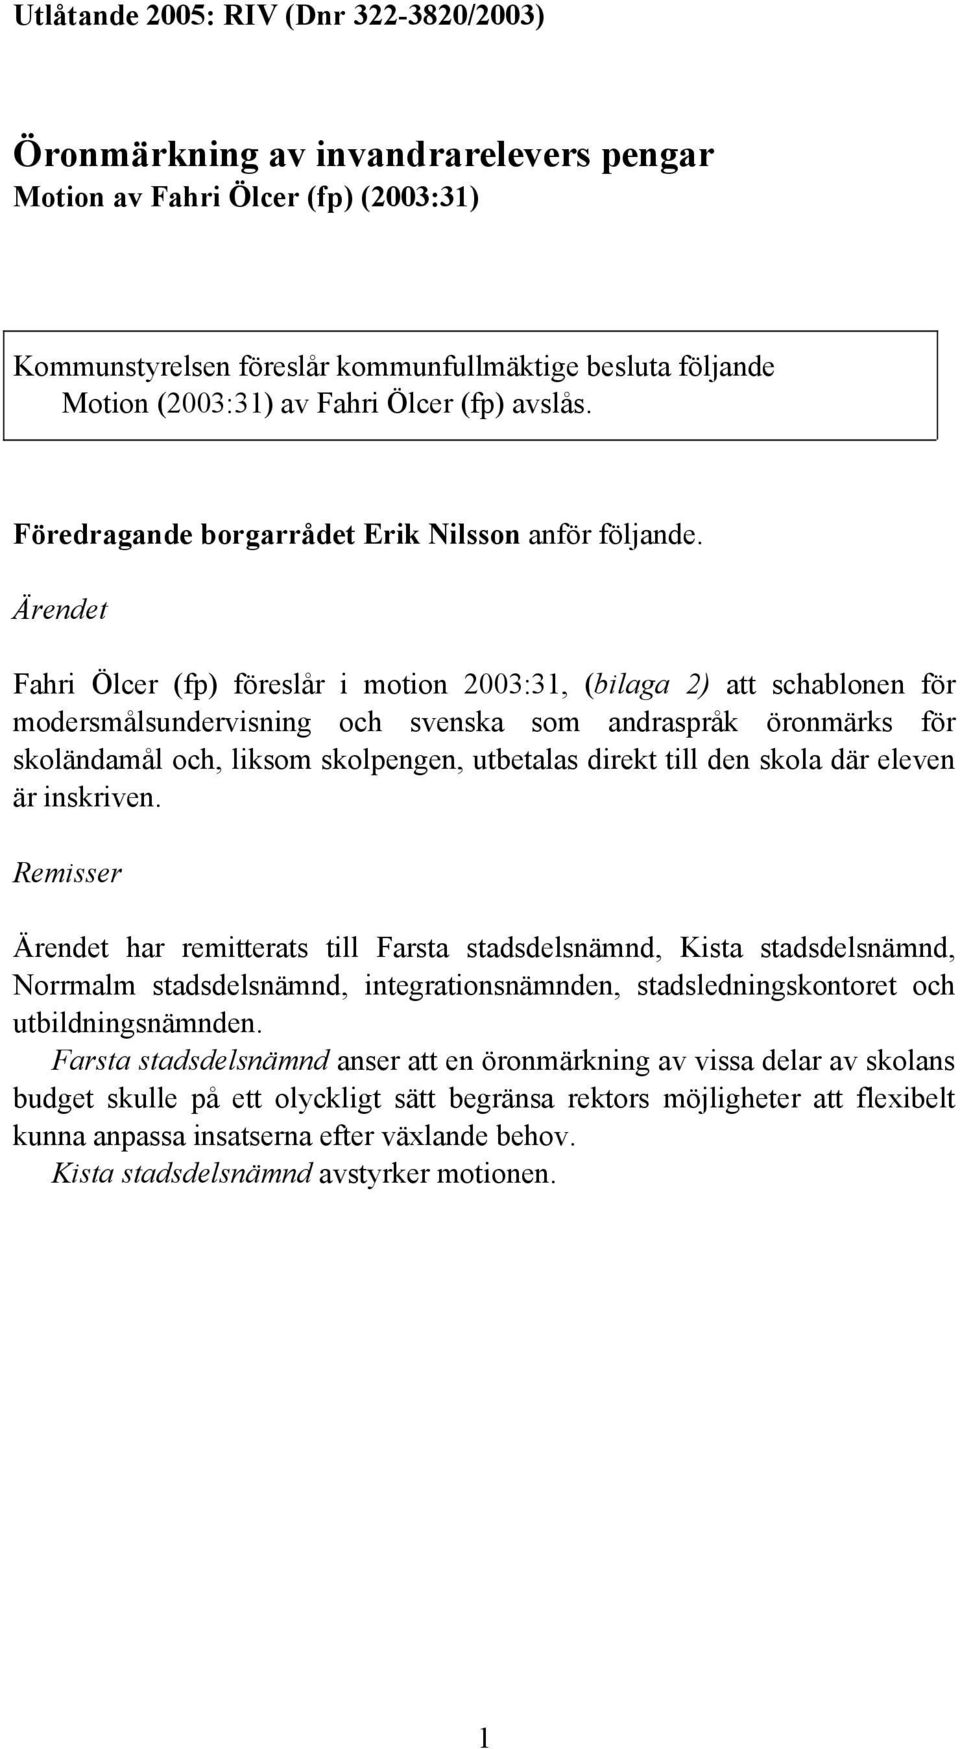 Ärendet Fahri Ölcer (fp) föreslår i motion 2003:31, (bilaga 2) att schablonen för modersmålsundervisning och svenska som andraspråk öronmärks för skoländamål och, liksom skolpengen, utbetalas direkt